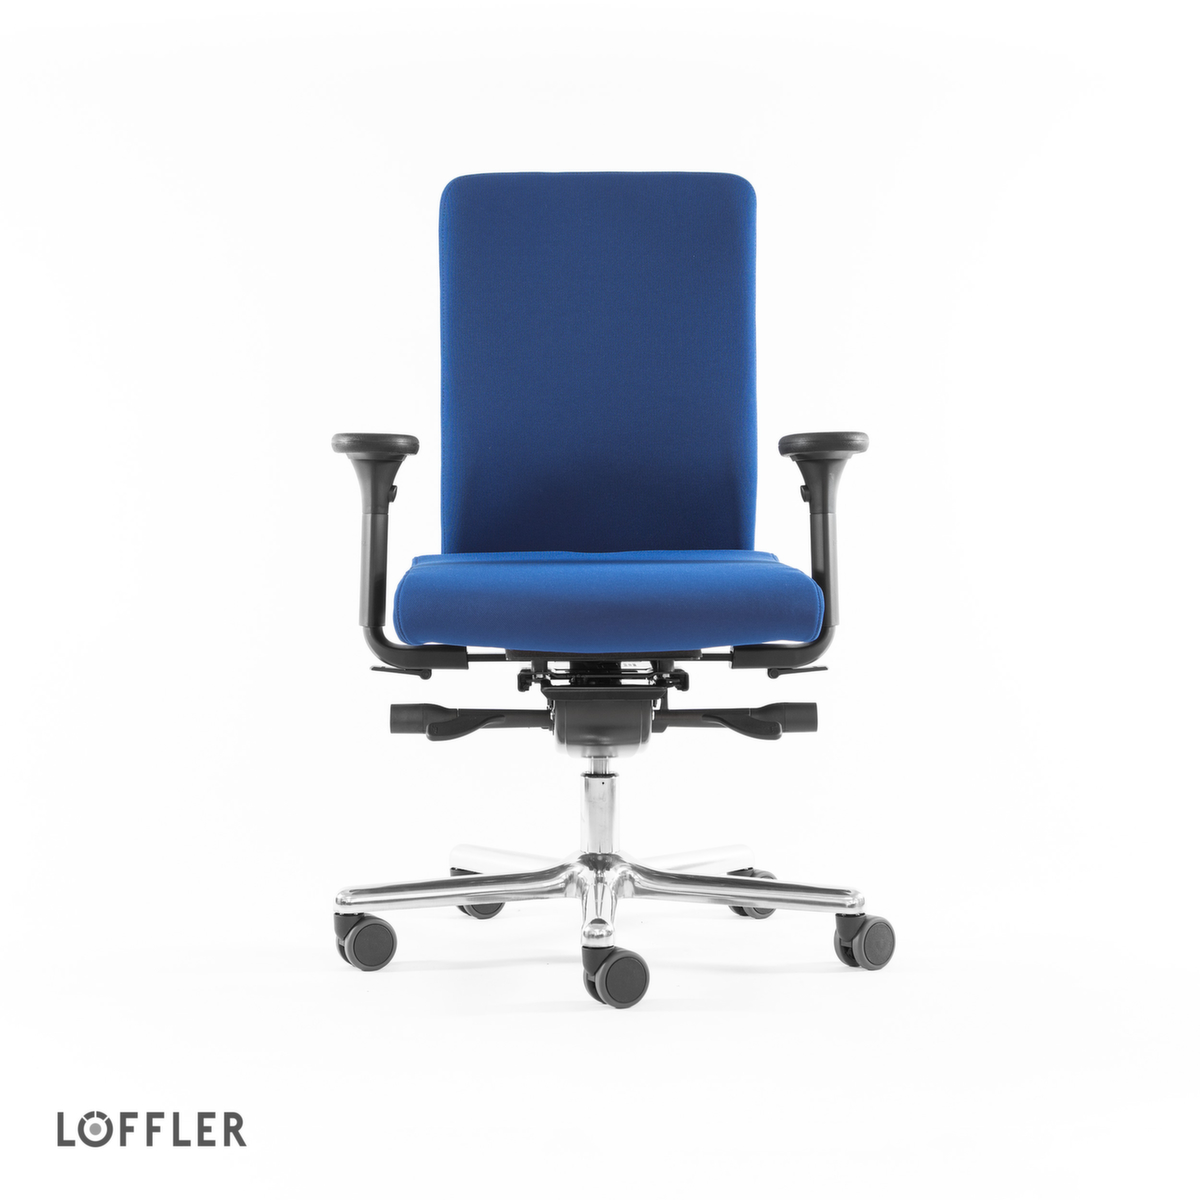 Löffler Bureaustoel met zitting met pocketveerkernen, blauw  ZOOM